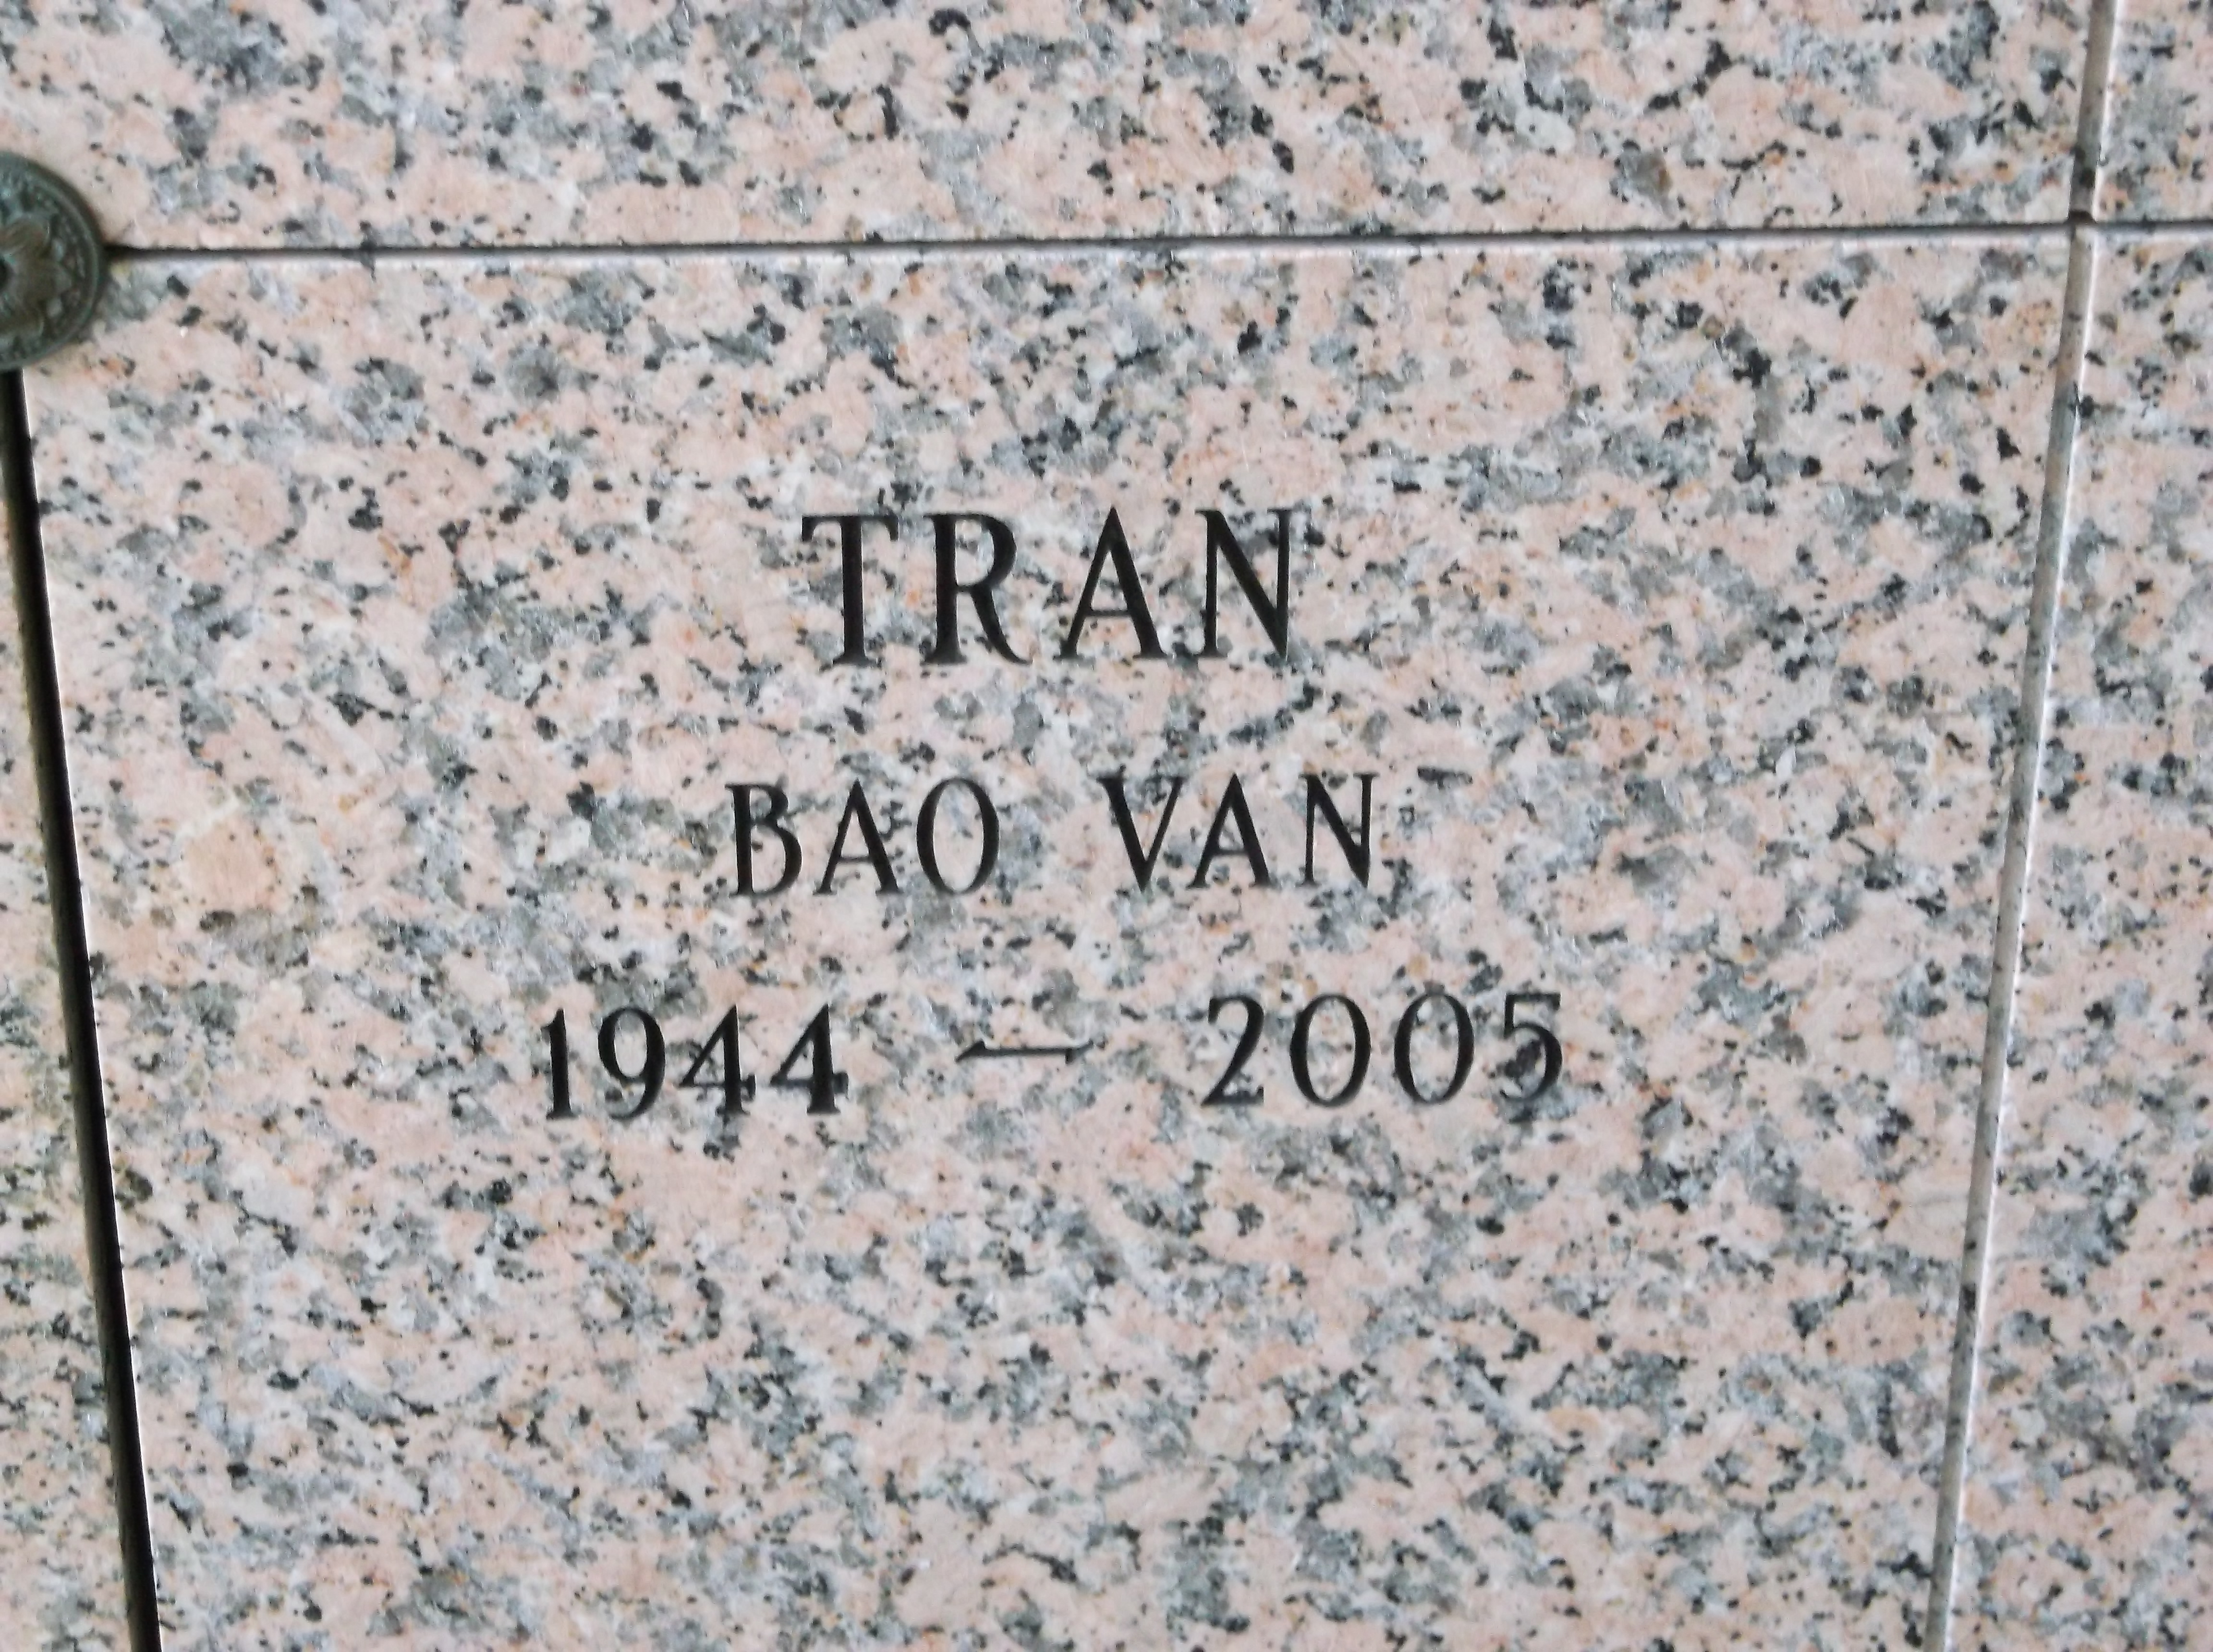 Bao Van Tran